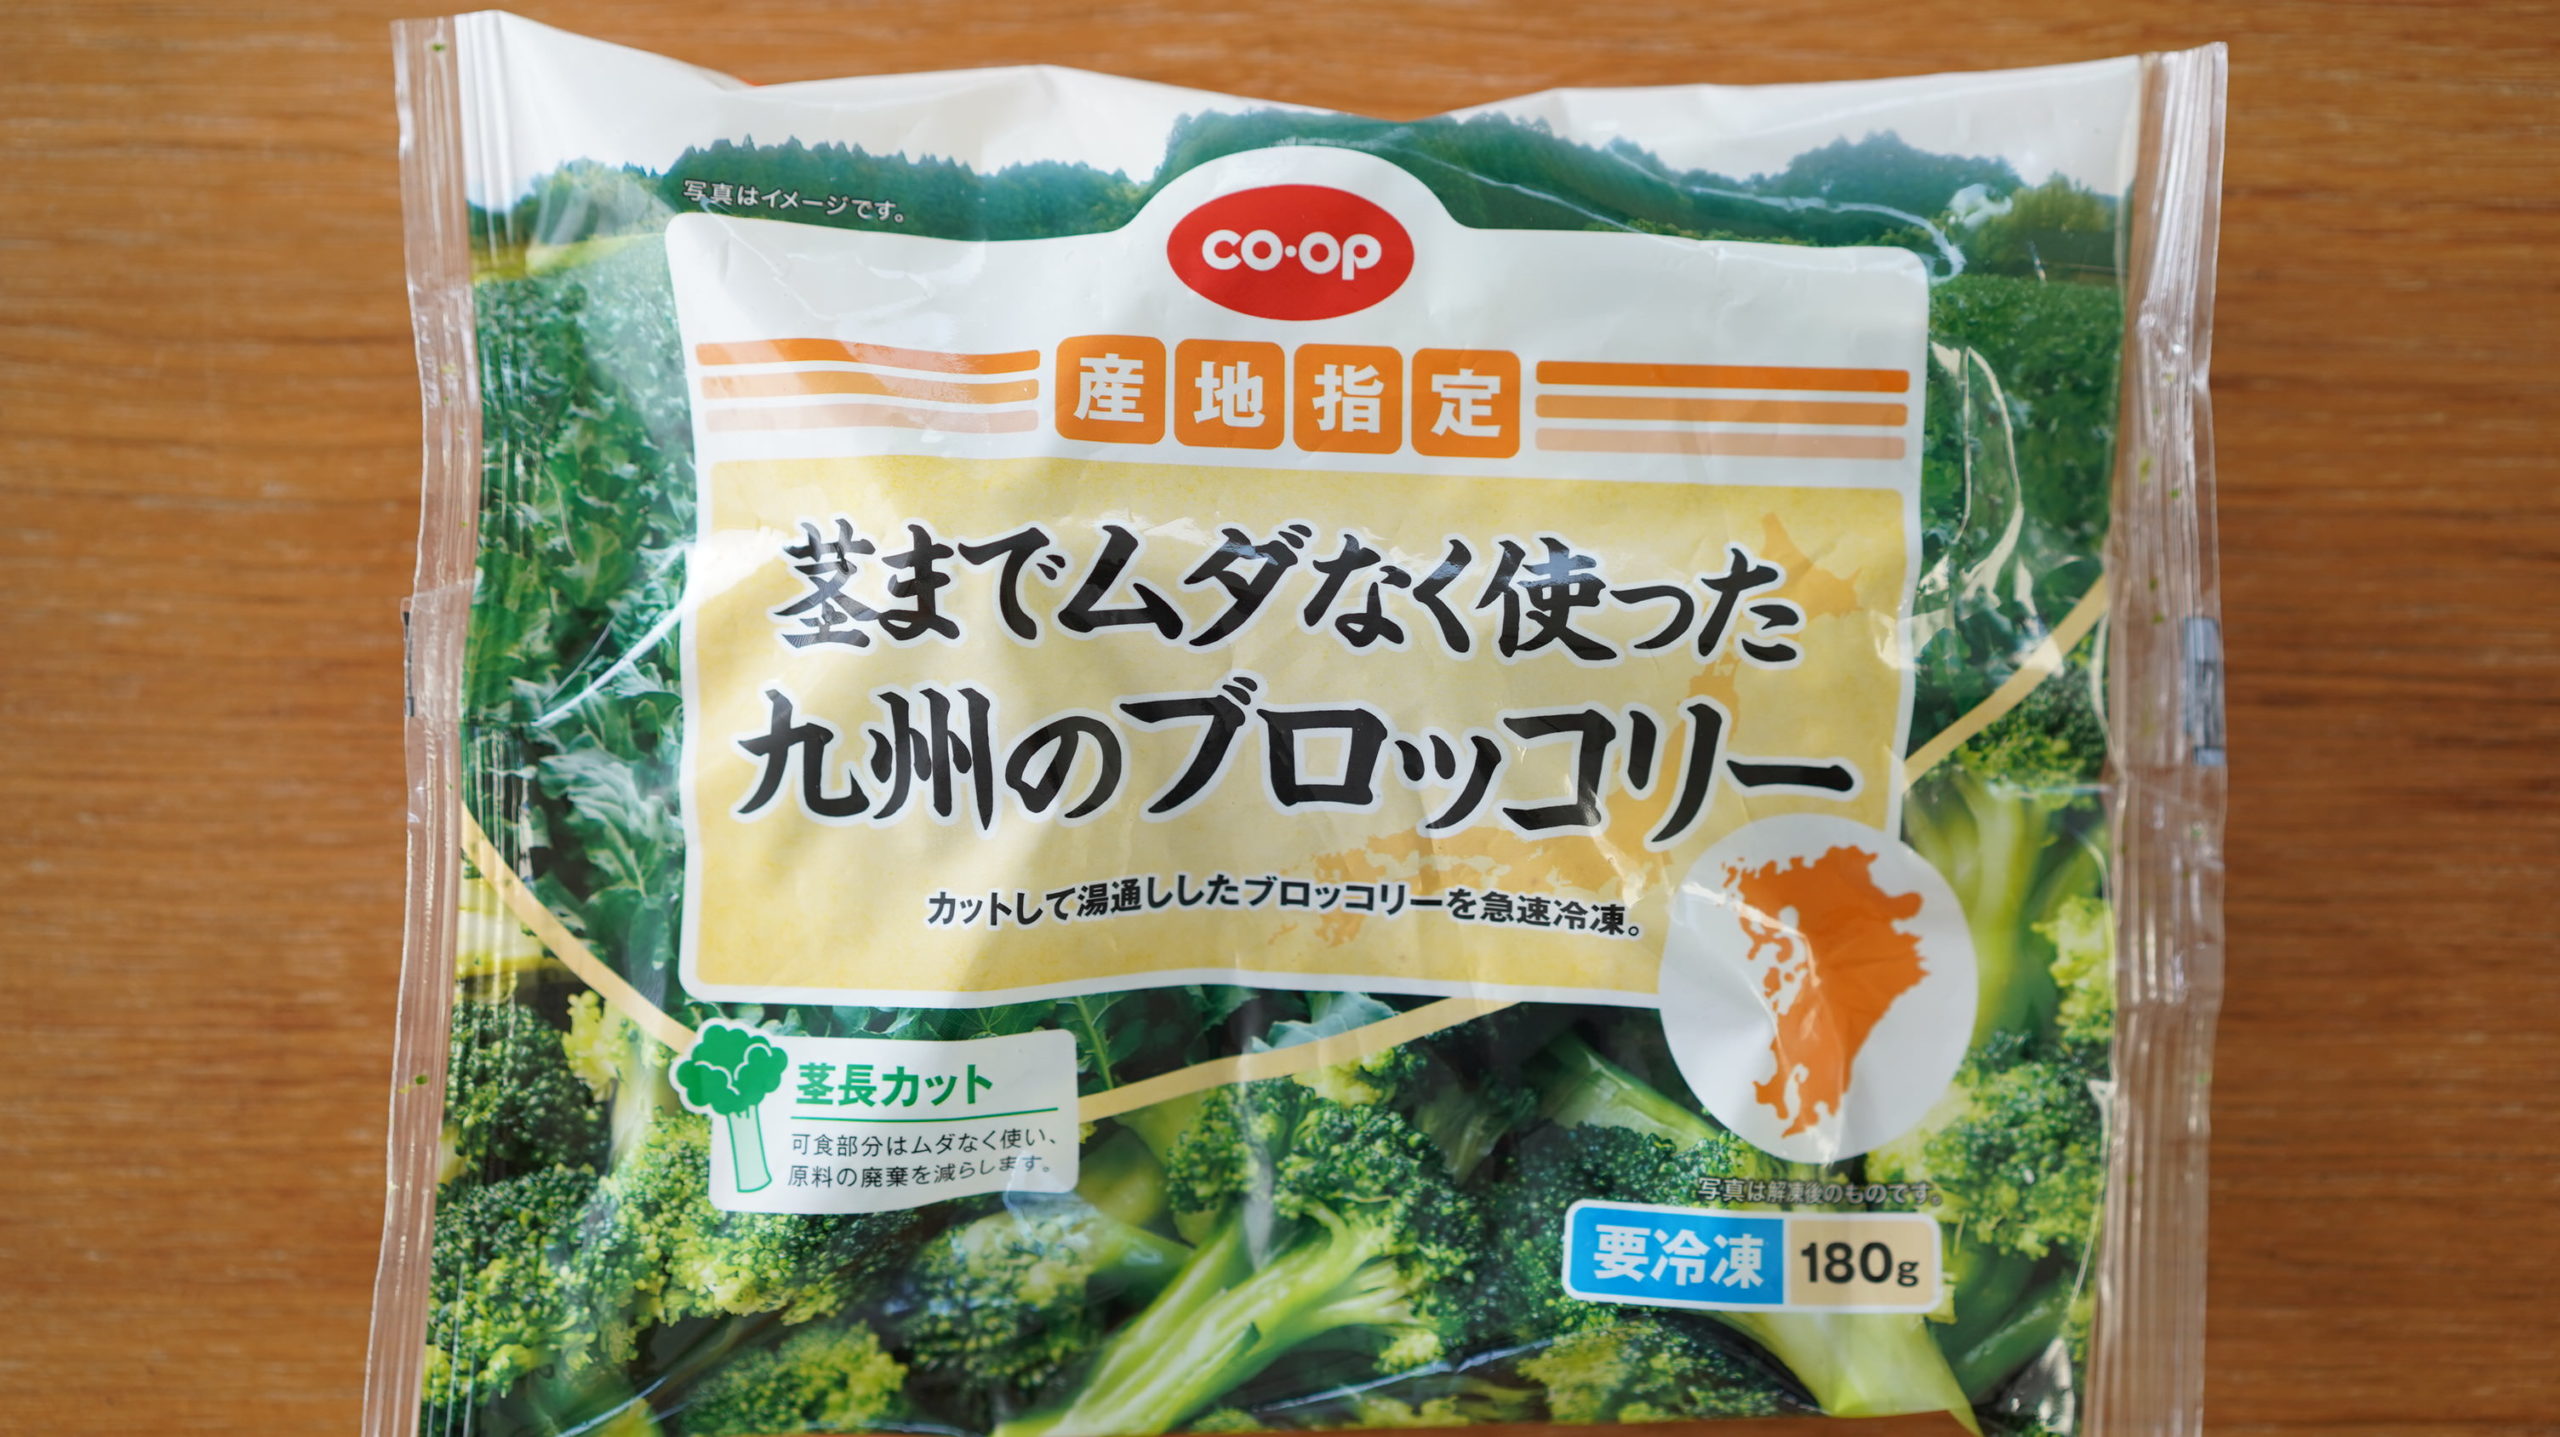 生協coop宅配の冷凍食品「茎までムダなく使った九州のブロッコリー」のパッケージ写真